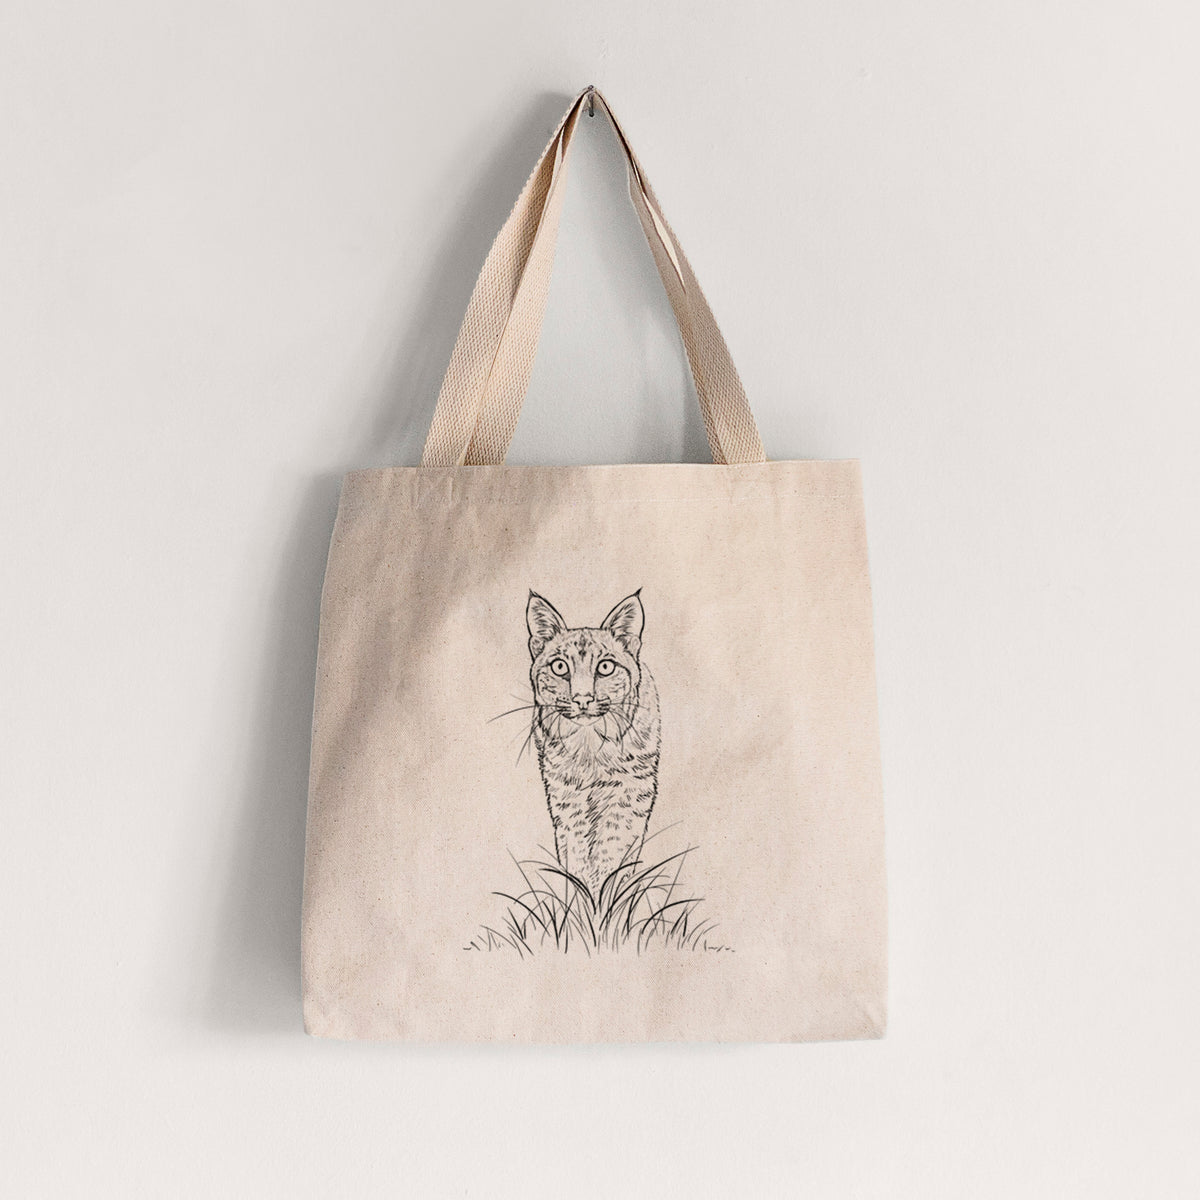 Bobcat - Lynx rufus - Tote Bag